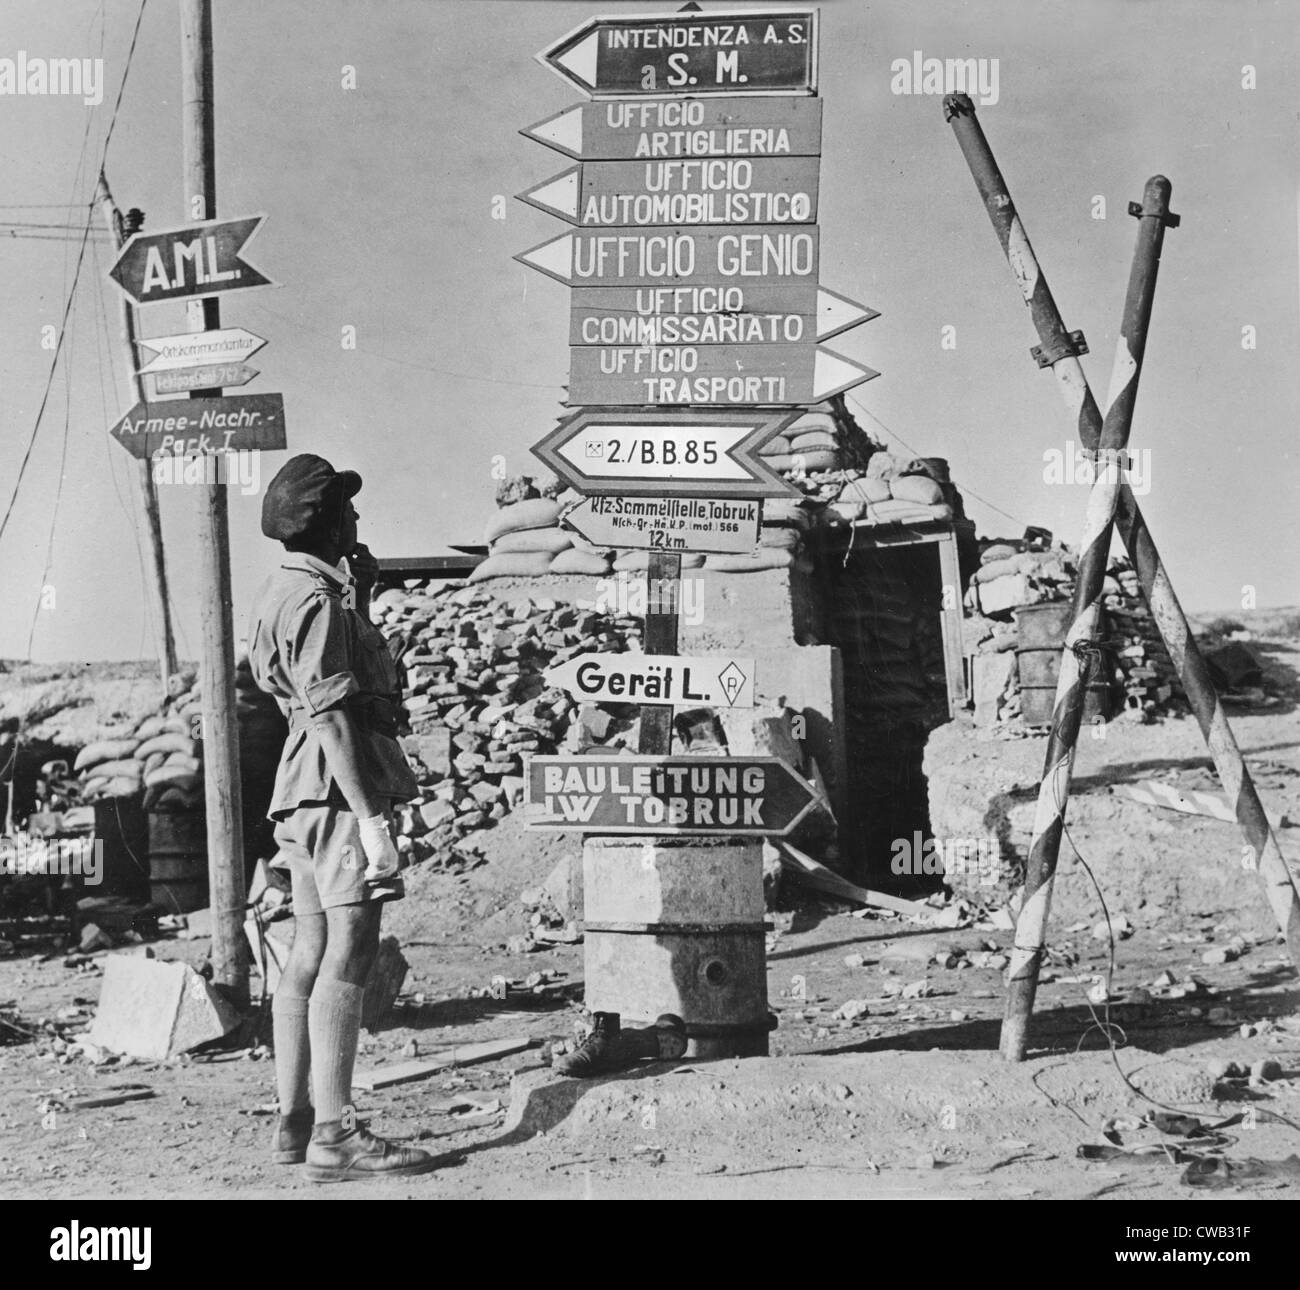 Zweiter Weltkrieg, Schilder gedruckt Deutsch und Italienisch verweisen auf frühere Achse Büros, einer Straßenecke, Tobruk, Libyen, ca. 1942. Stockfoto